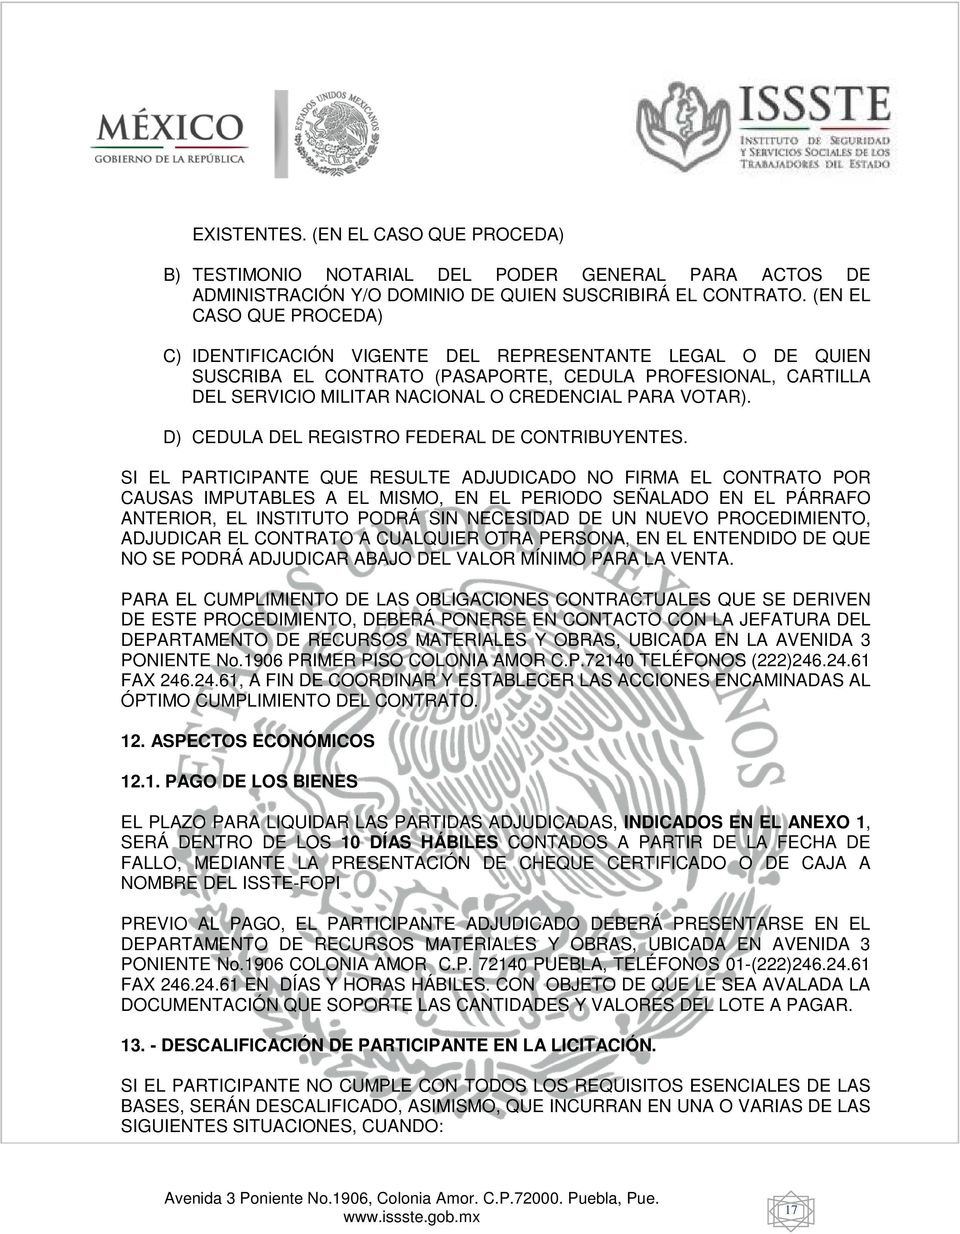 VOTAR). D) CEDULA DEL REGISTRO FEDERAL DE CONTRIBUYENTES.